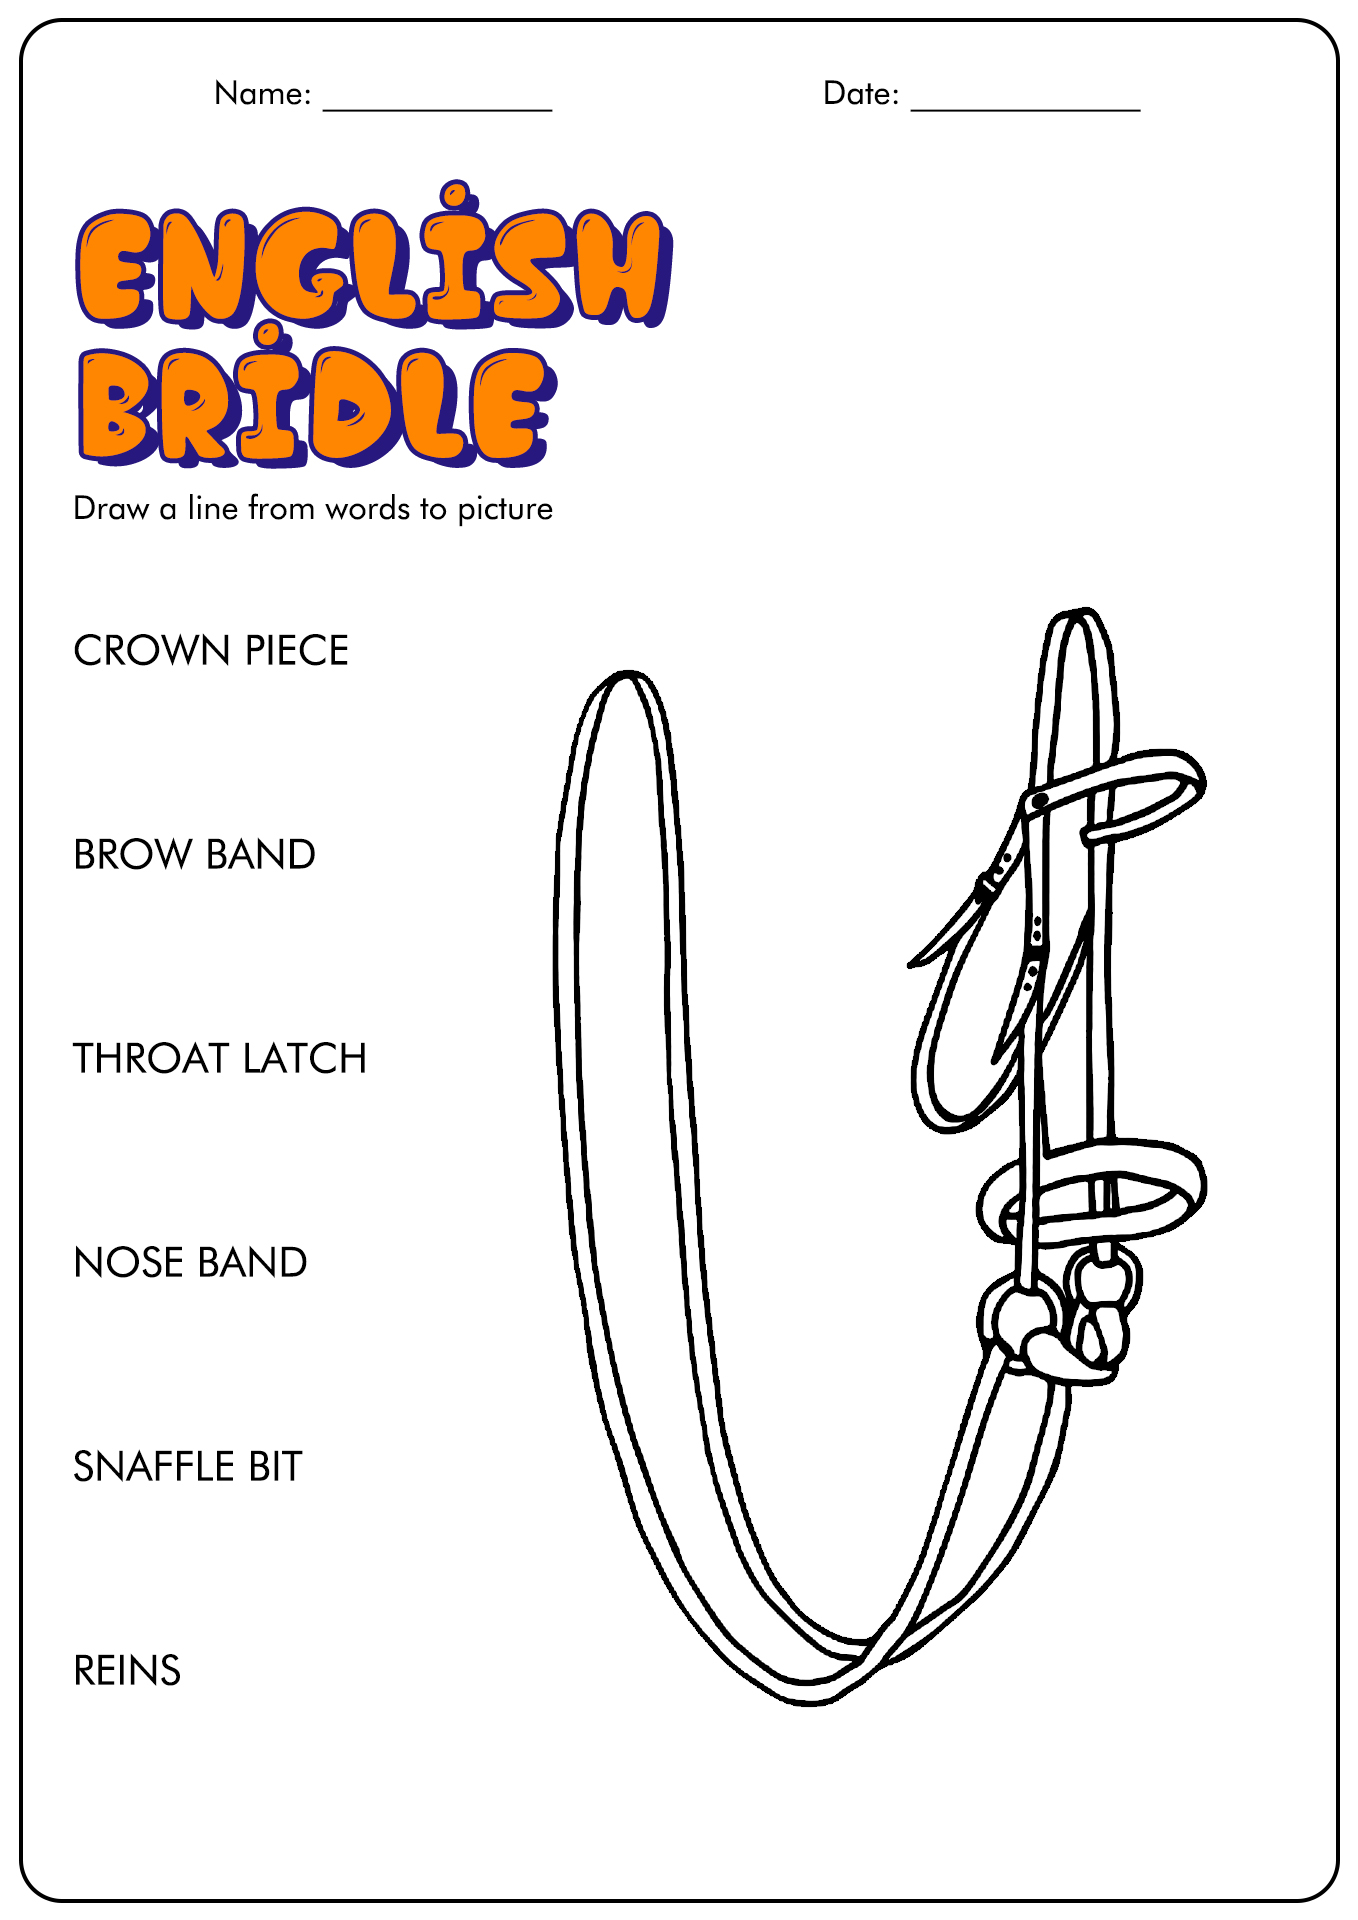 English Bridle Parts Worksheet Image